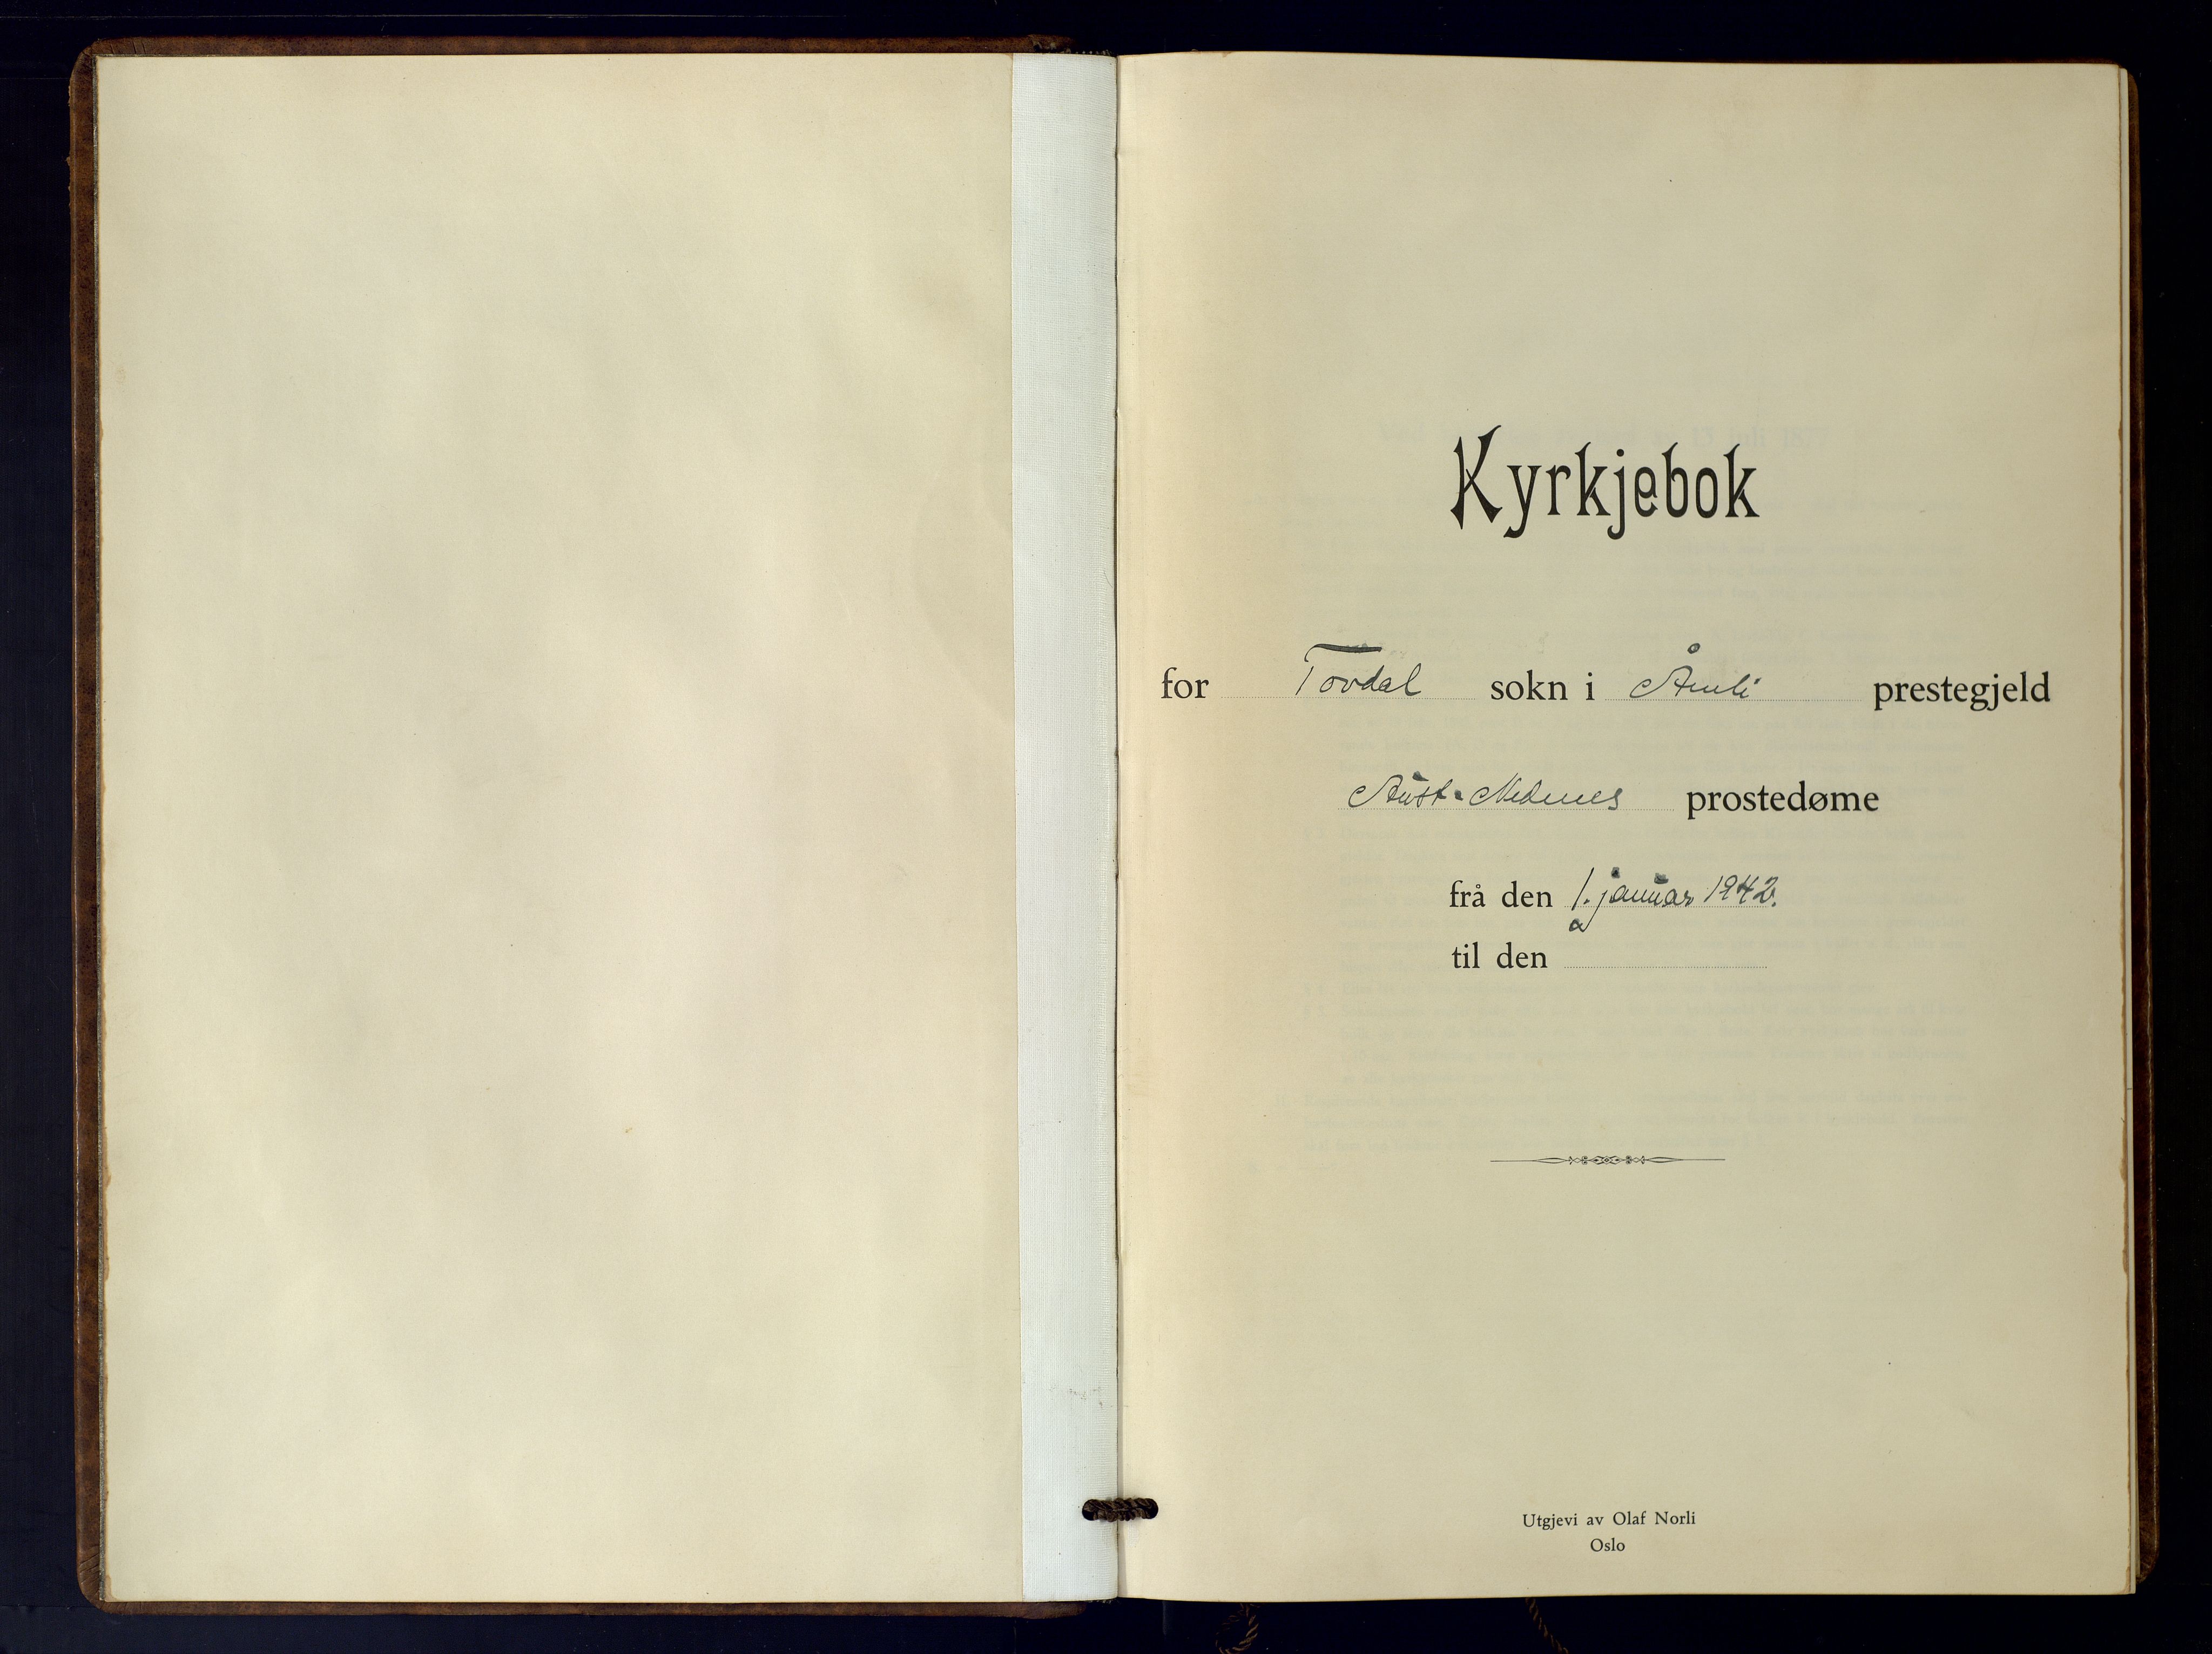 Åmli sokneprestkontor, SAK/1111-0050/F/Fb/Fbb/L0004: Parish register (copy) no. B-4, 1942-1975